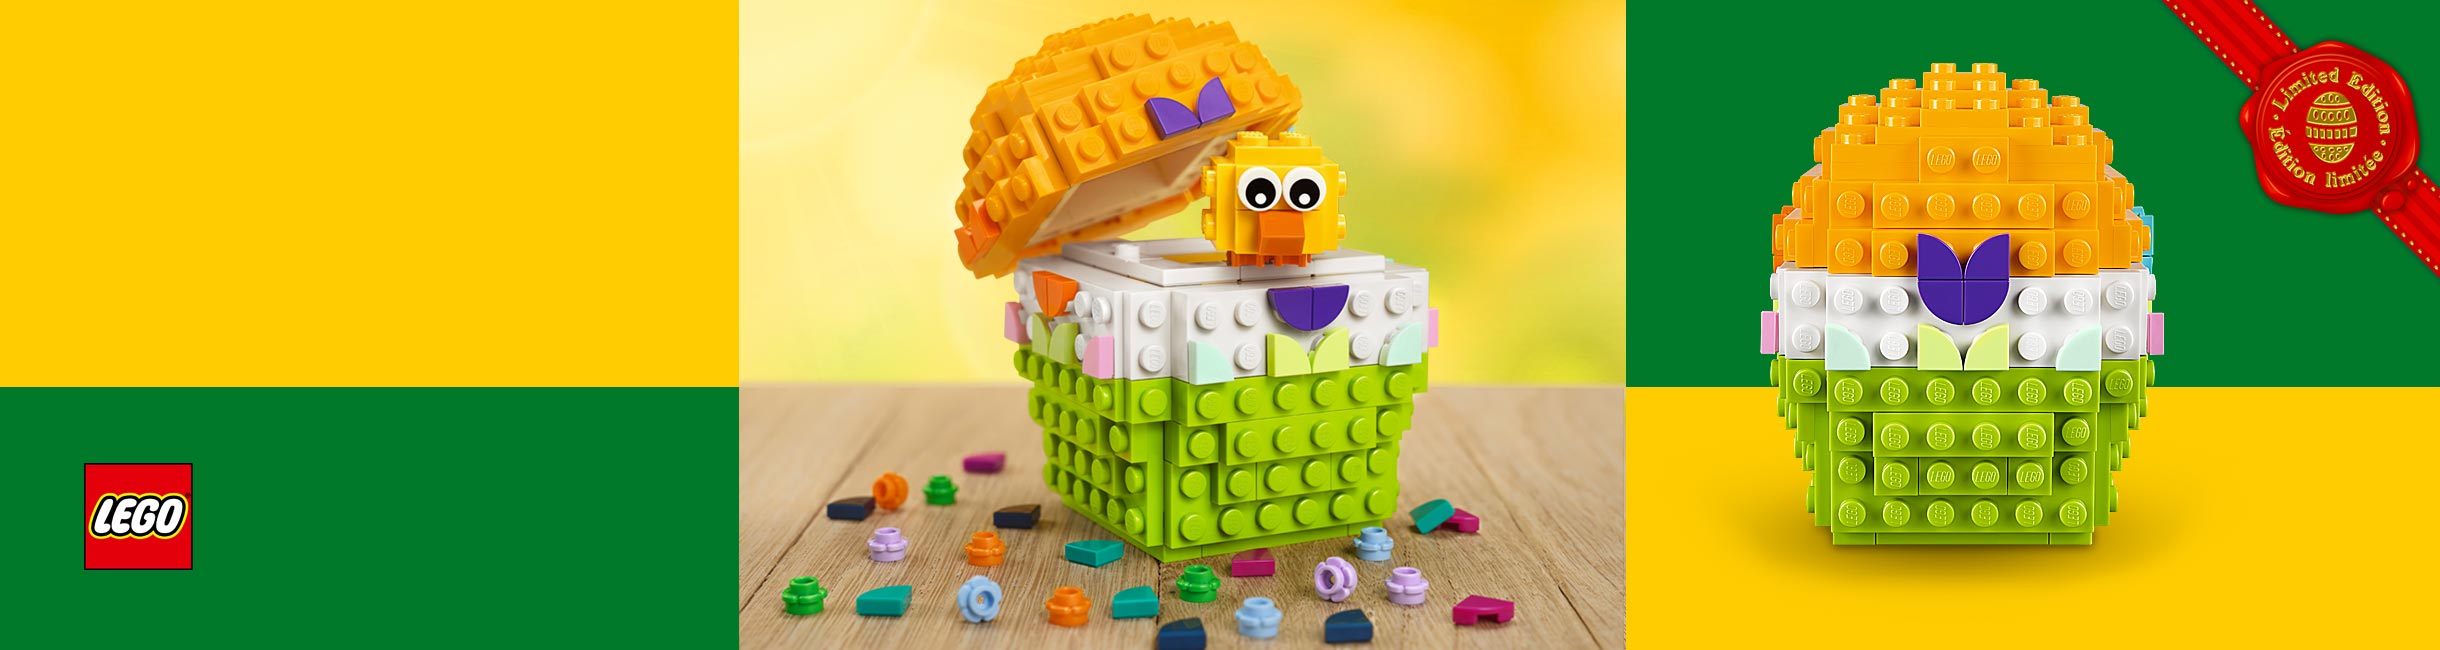 Рекламная акция Лего (LEGO) «Креативное пробуждение!»